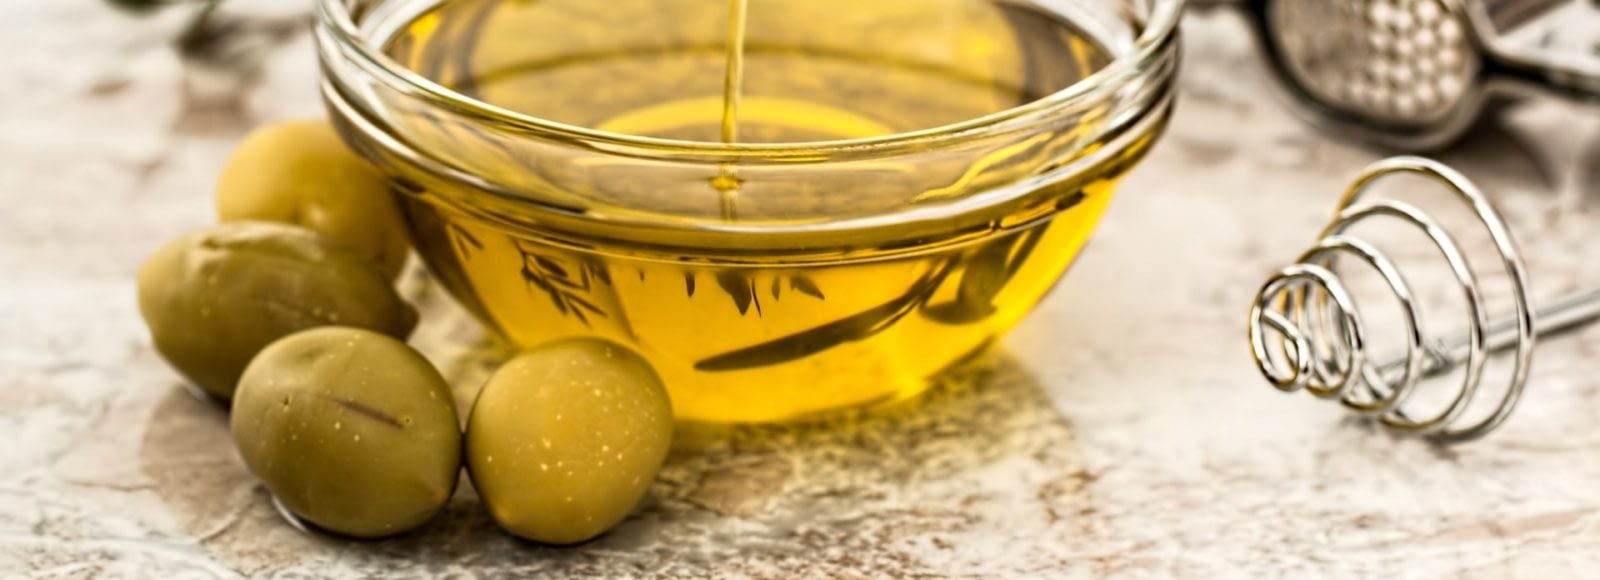 оливковое масло очень полезно